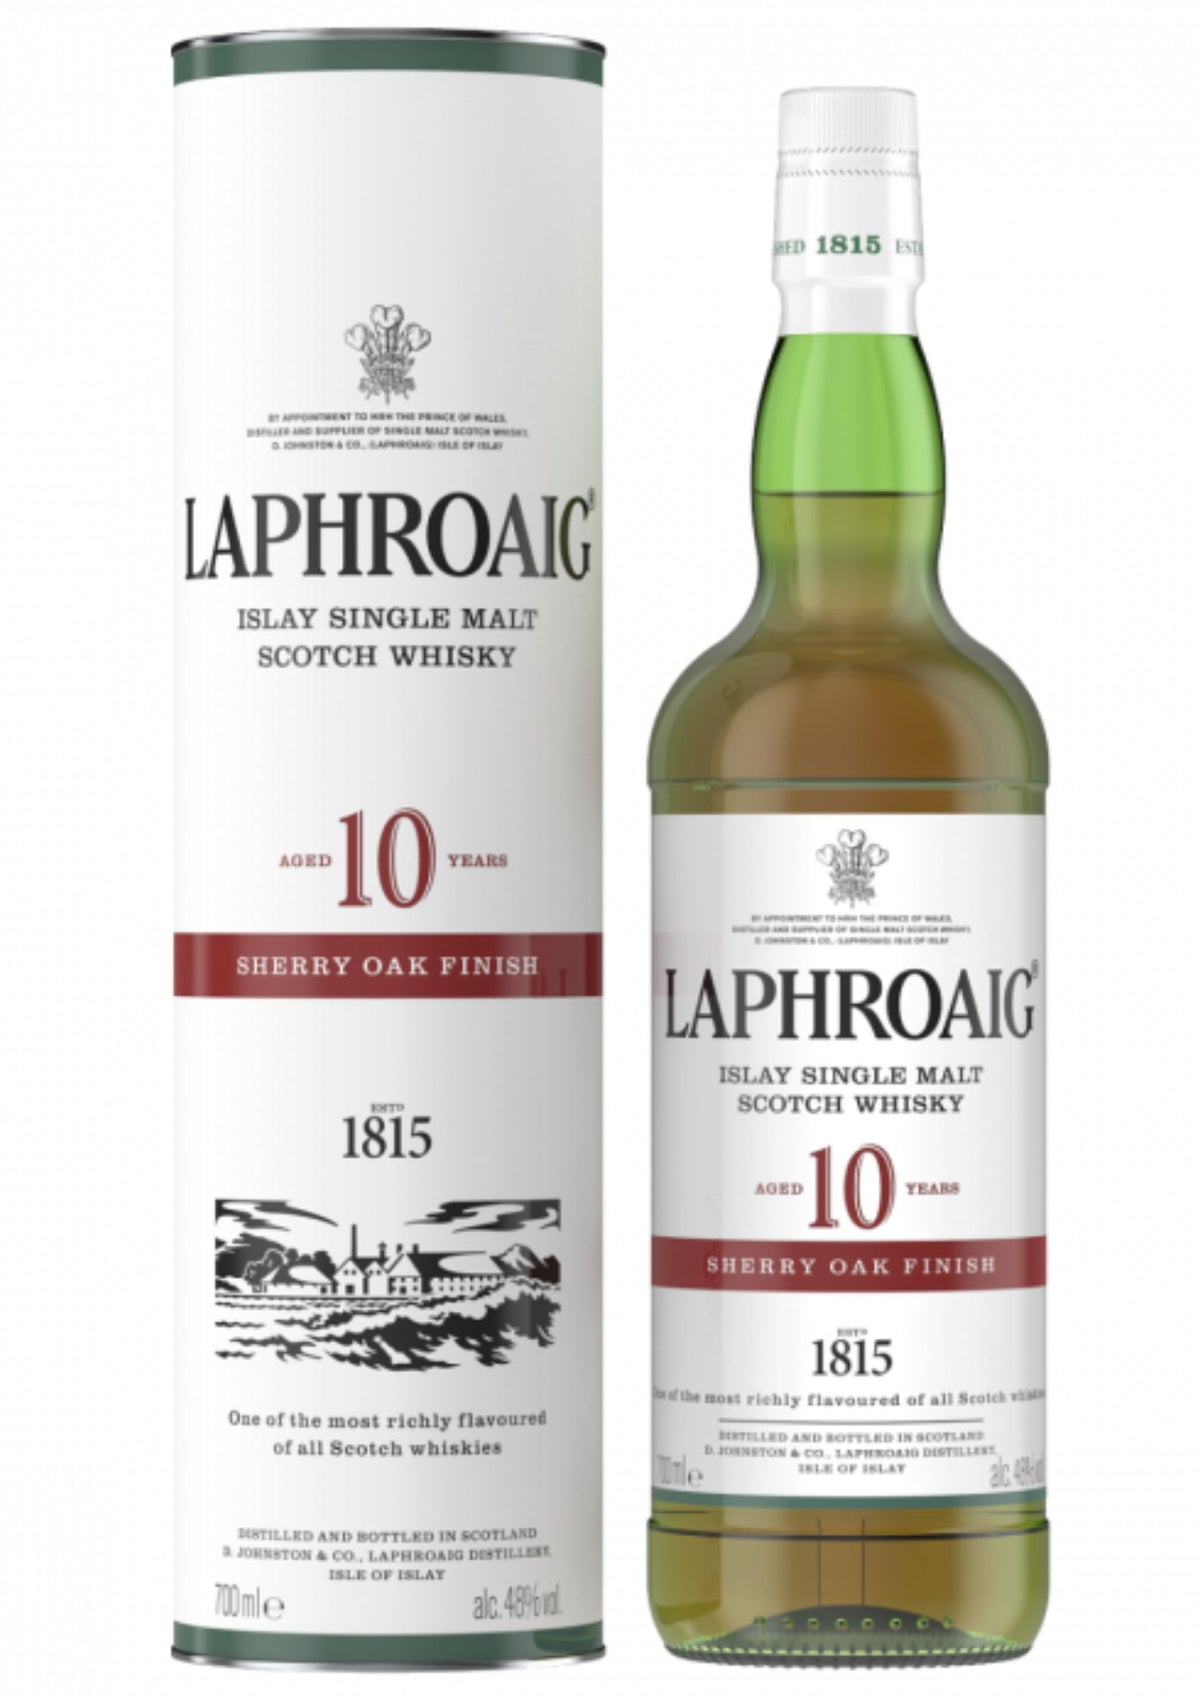 Laphroaig 10-Year-Old Sherry Oak Finish, Islay Single Malt Scotch Whisky, 48%